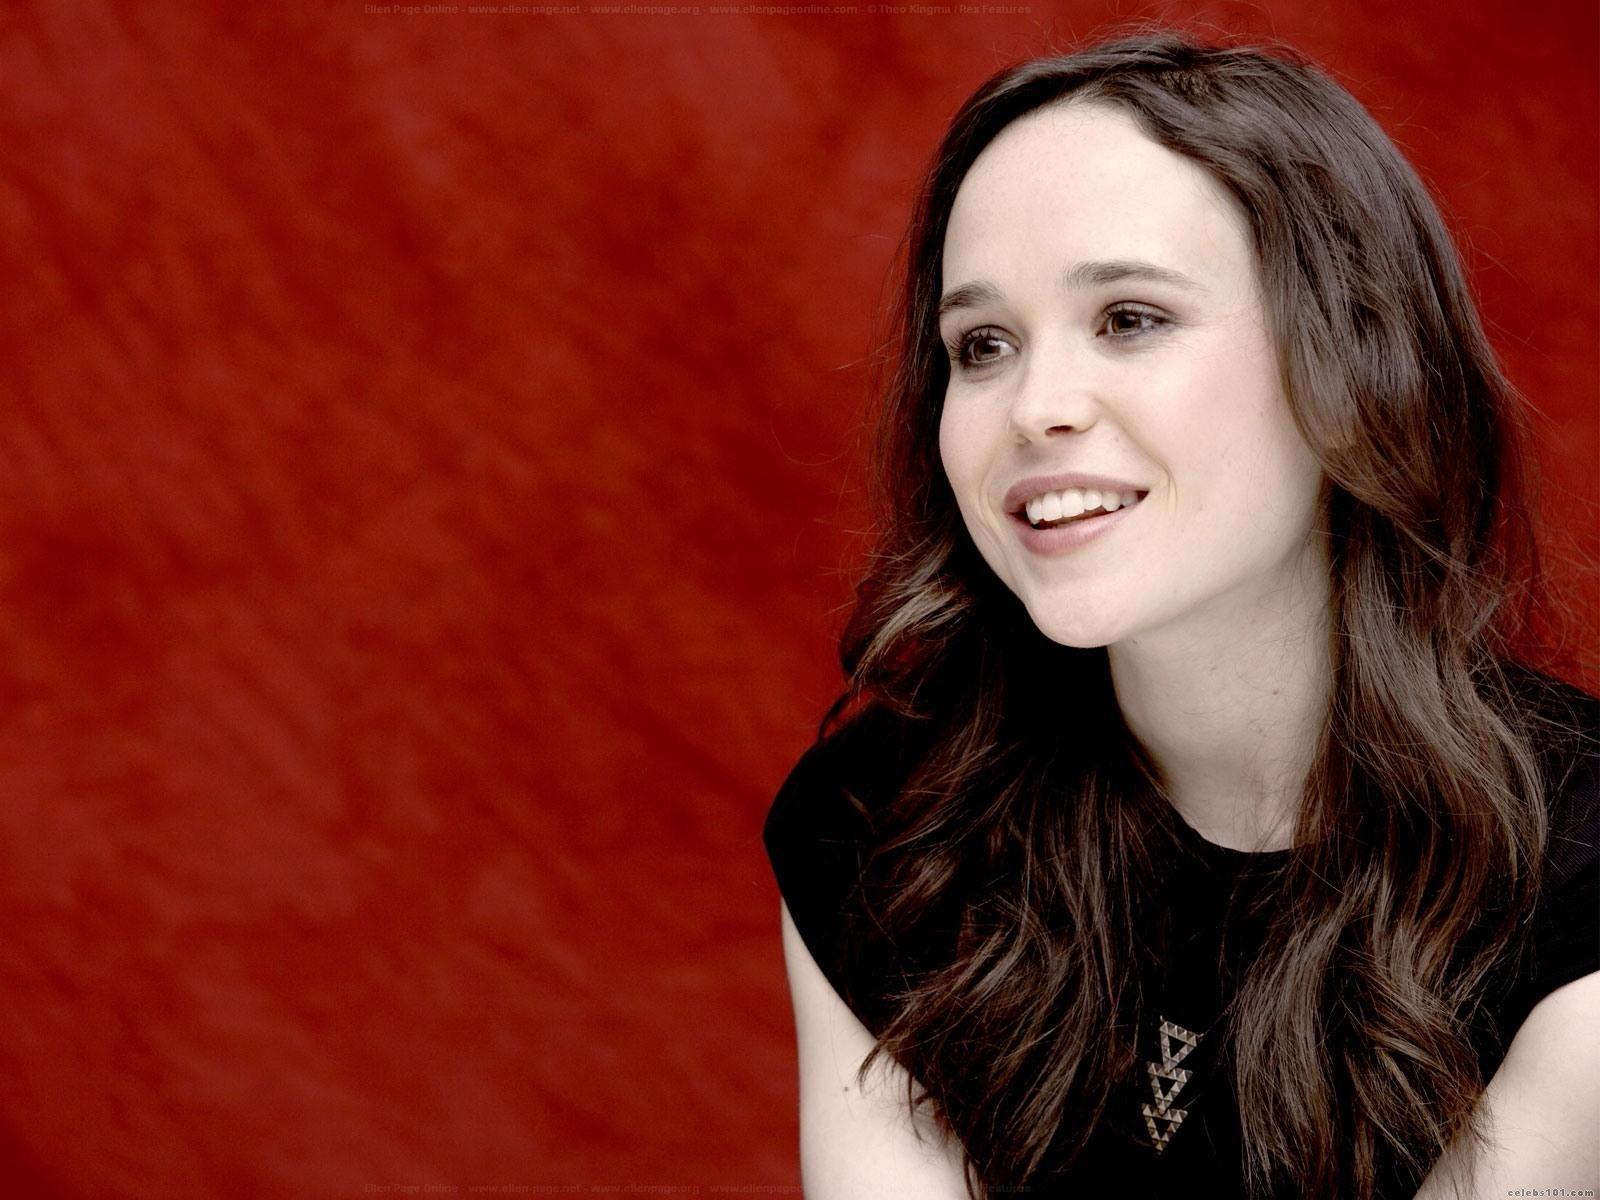 Ellen Page Hd Image 10. Ellen Page HD Image. HD